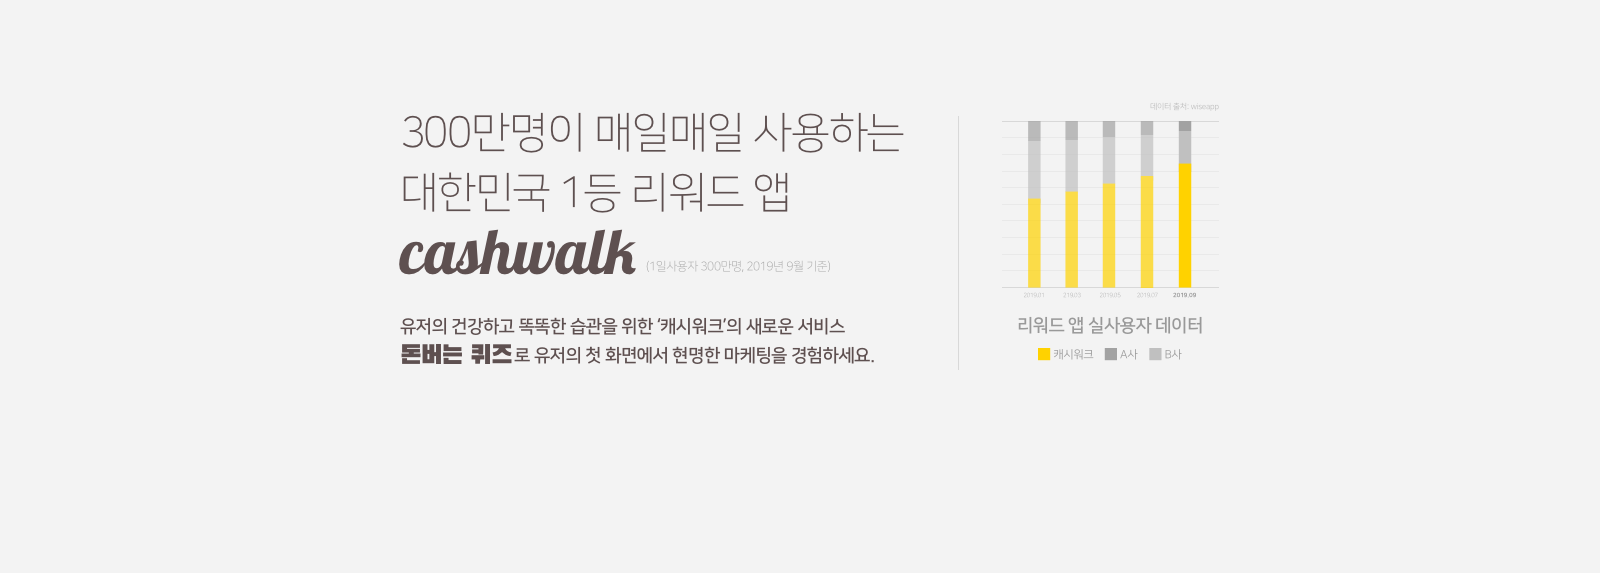 300만명이 매일매일 사용하는 대한민국 1등 리워드 앱 - cashwalk